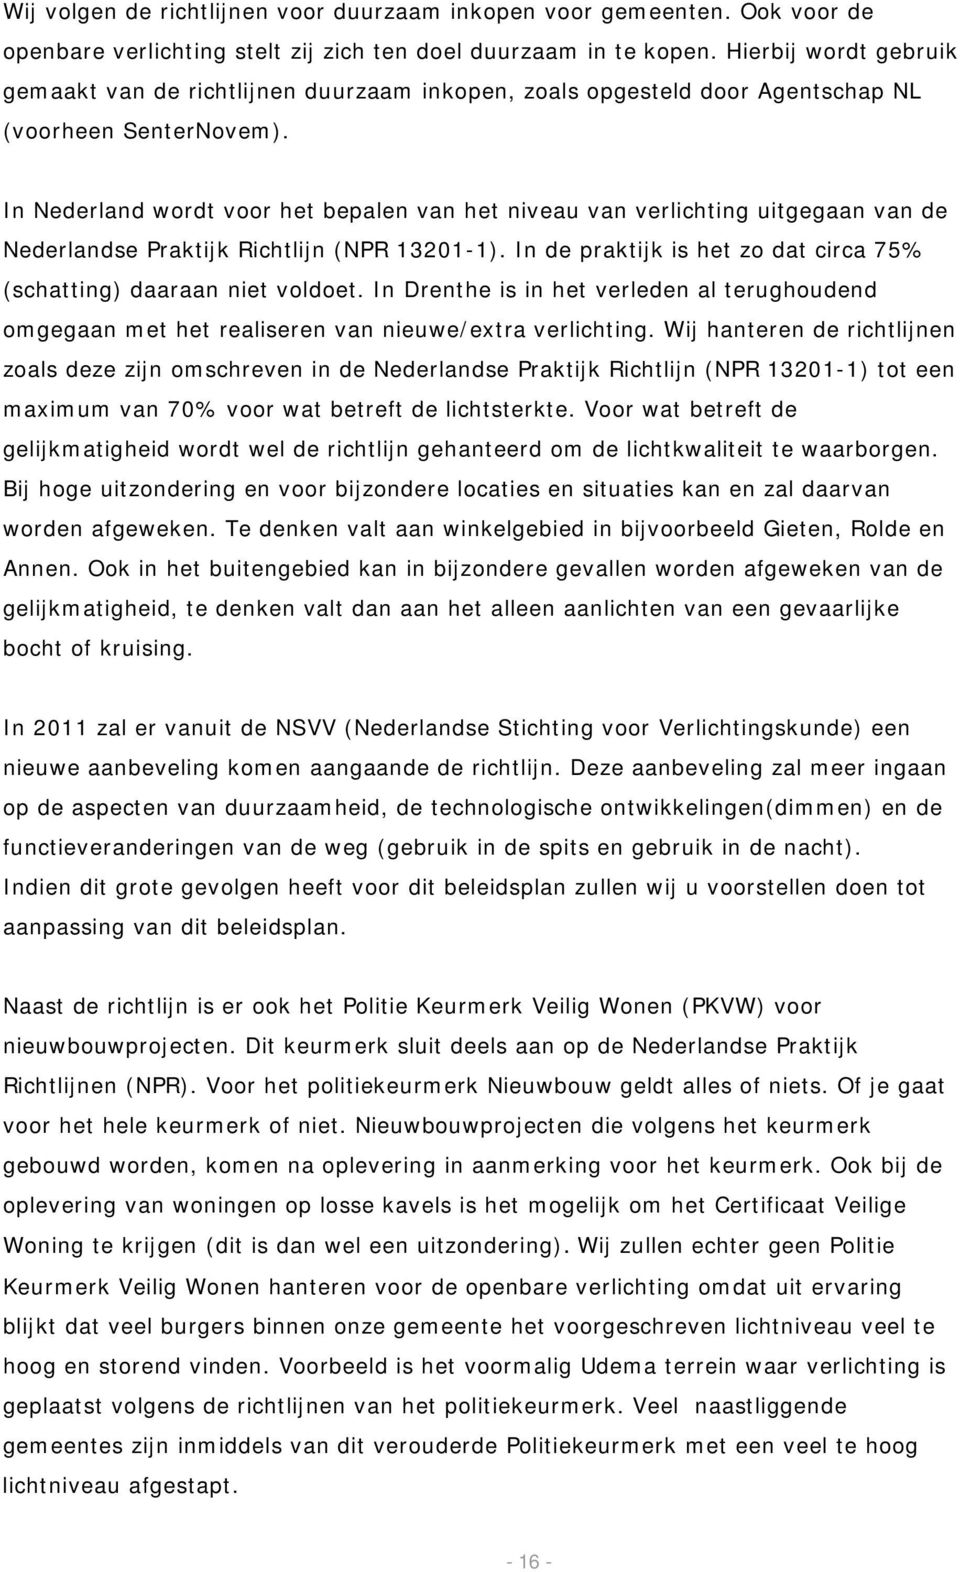 In Nederland wordt voor het bepalen van het niveau van verlichting uitgegaan van de Nederlandse Praktijk Richtlijn (NPR 13201-1).